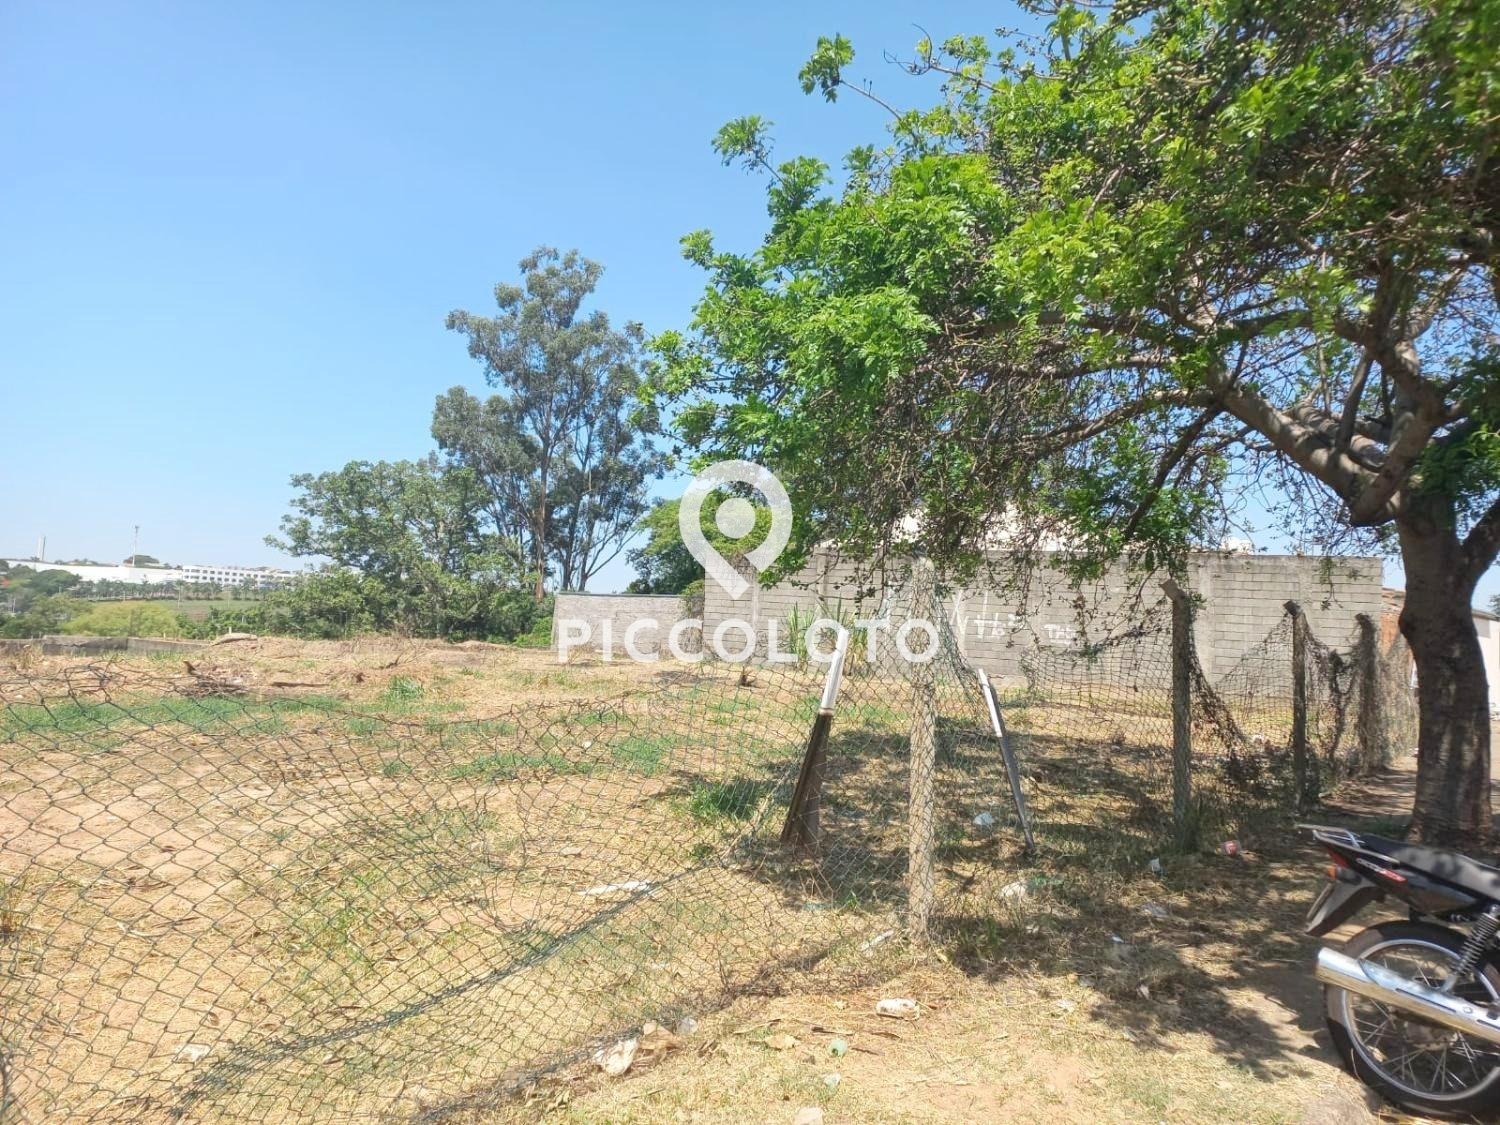 Piccoloto - Terreno à venda no Jardim Nilópolis em Campinas